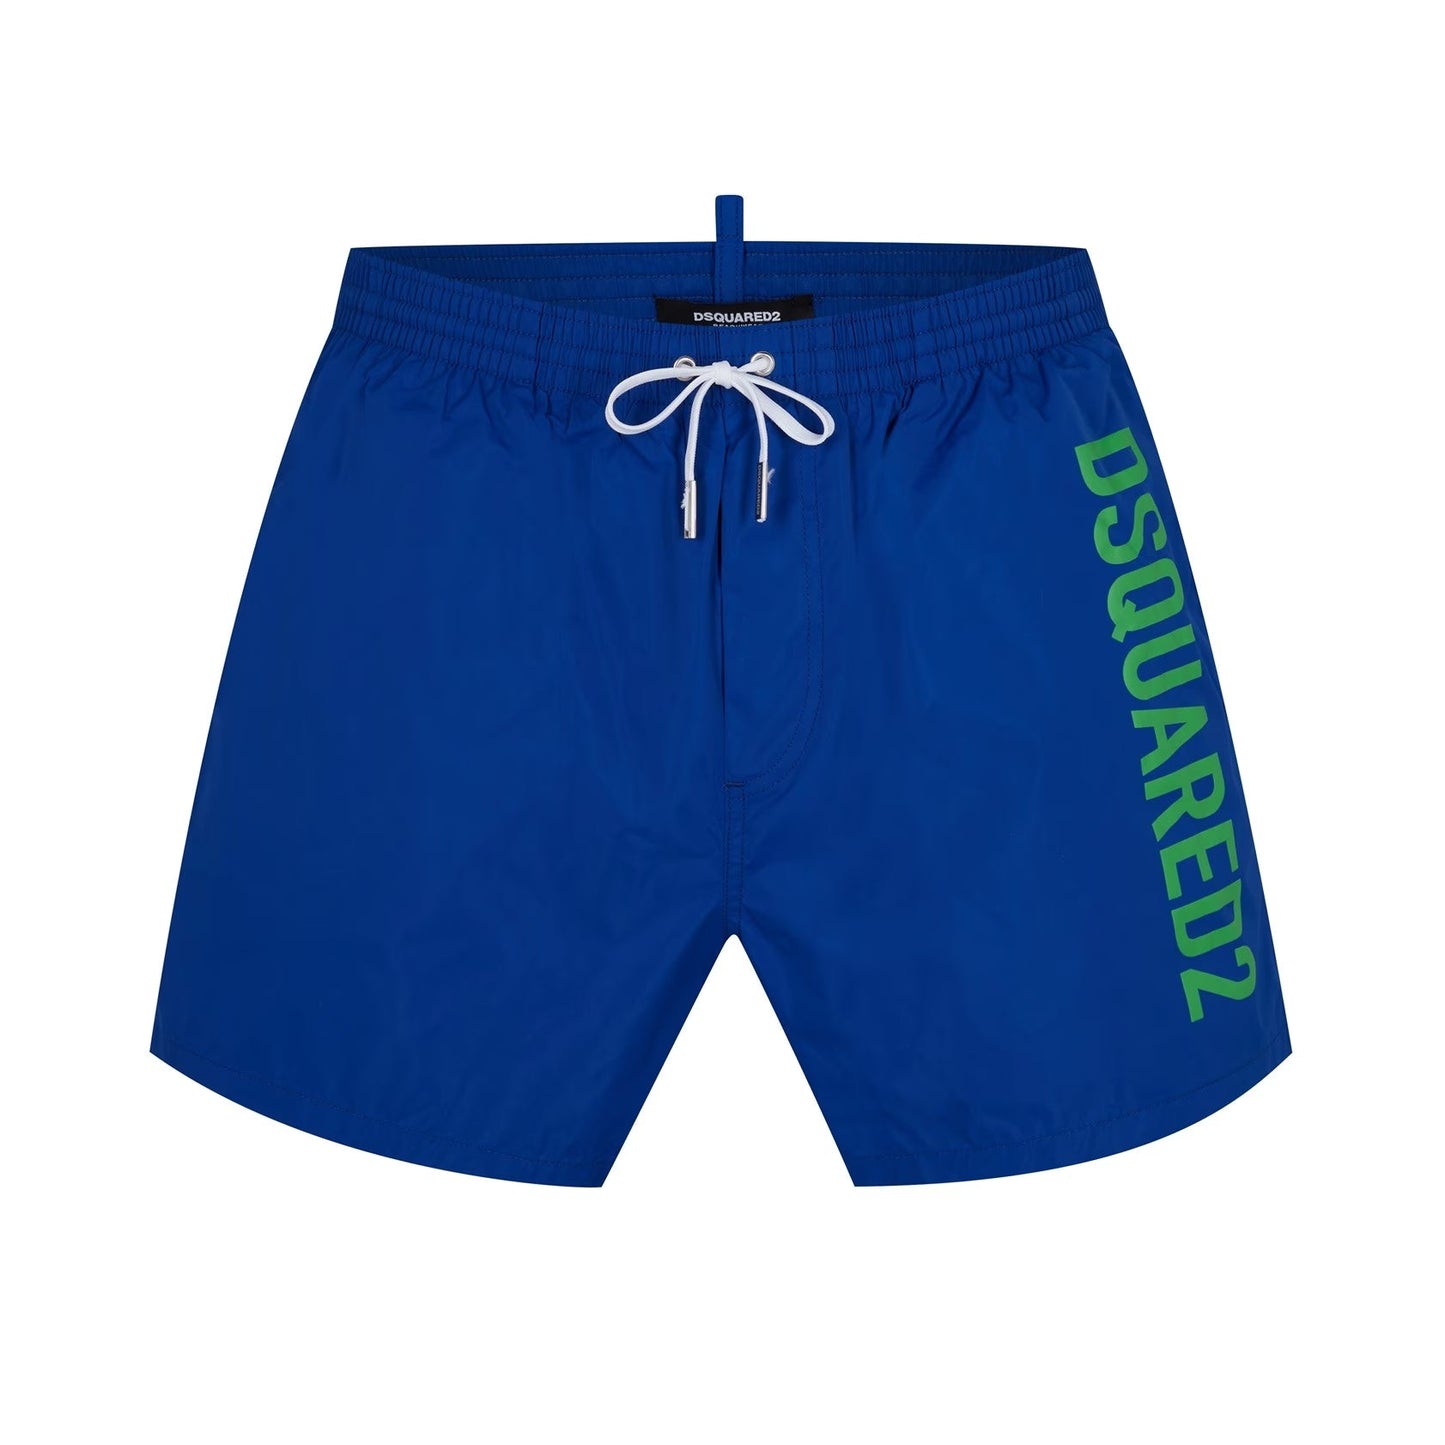 DSquared2 Side Logo Swim Shorts - 497 Blue - Escape Menswear